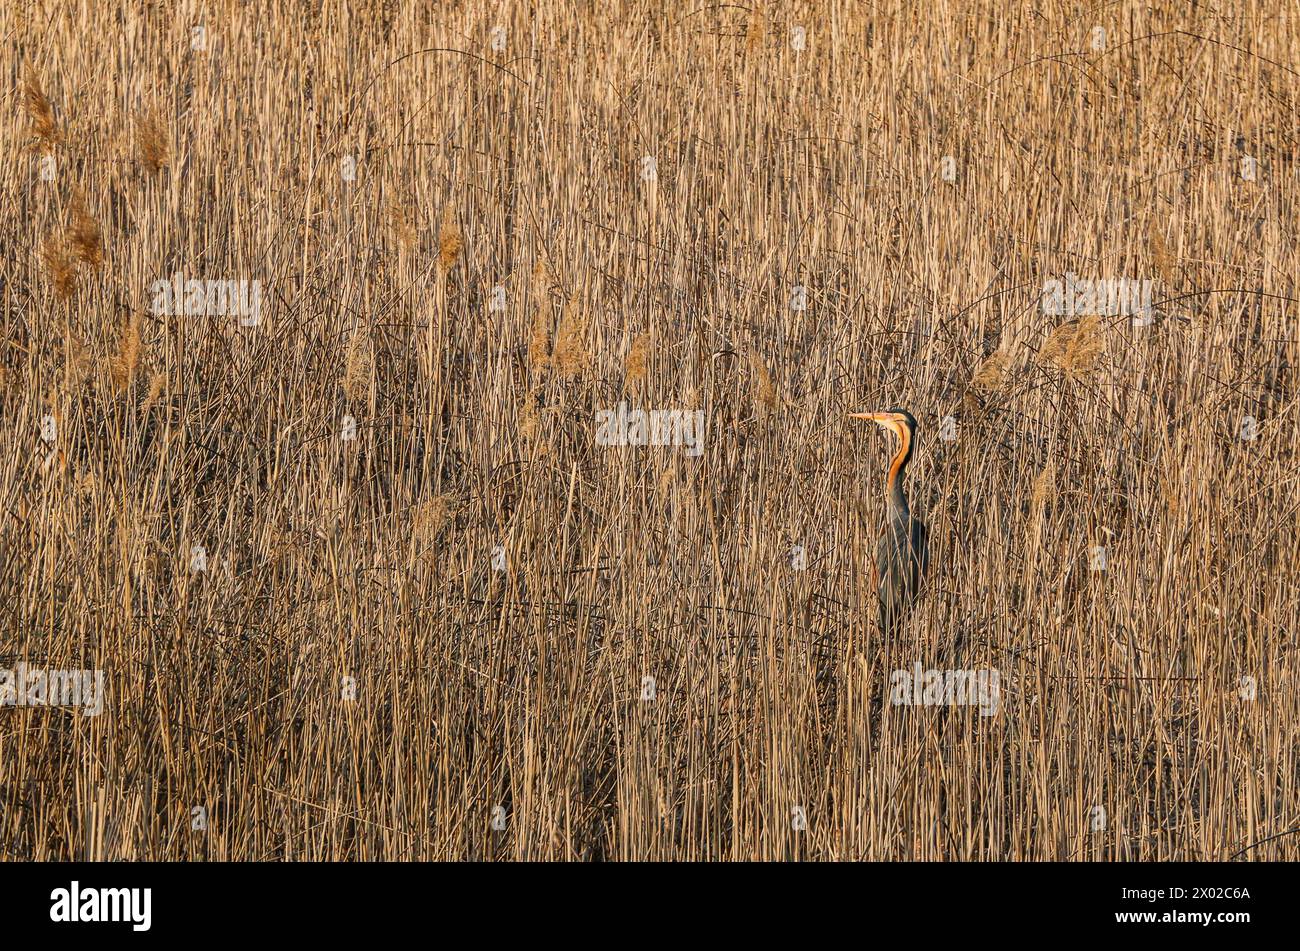 Aironi viola nel letto di canne, riserva naturale in Svizzera Foto Stock